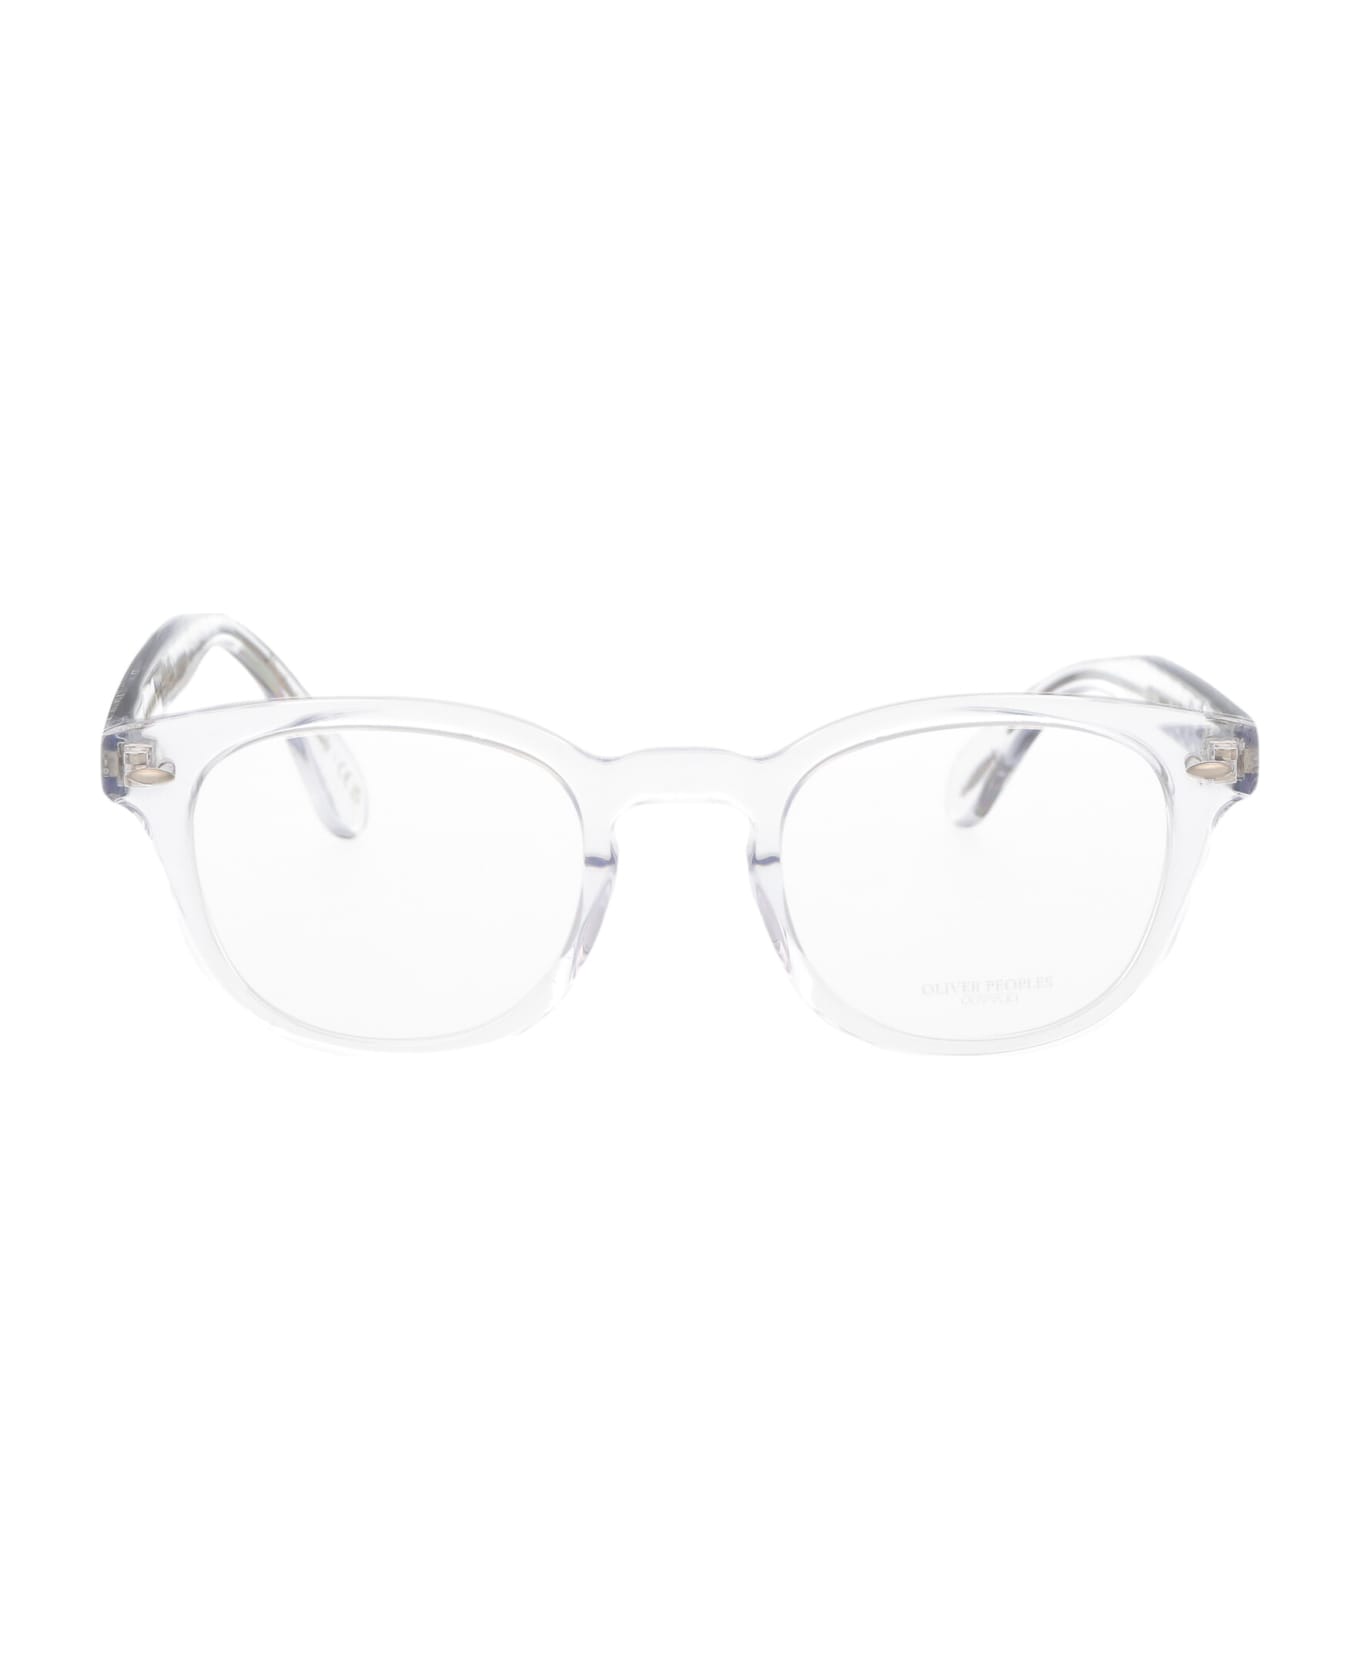 Oliver Peoples Sheldrake Glasses - 1762 Crystal